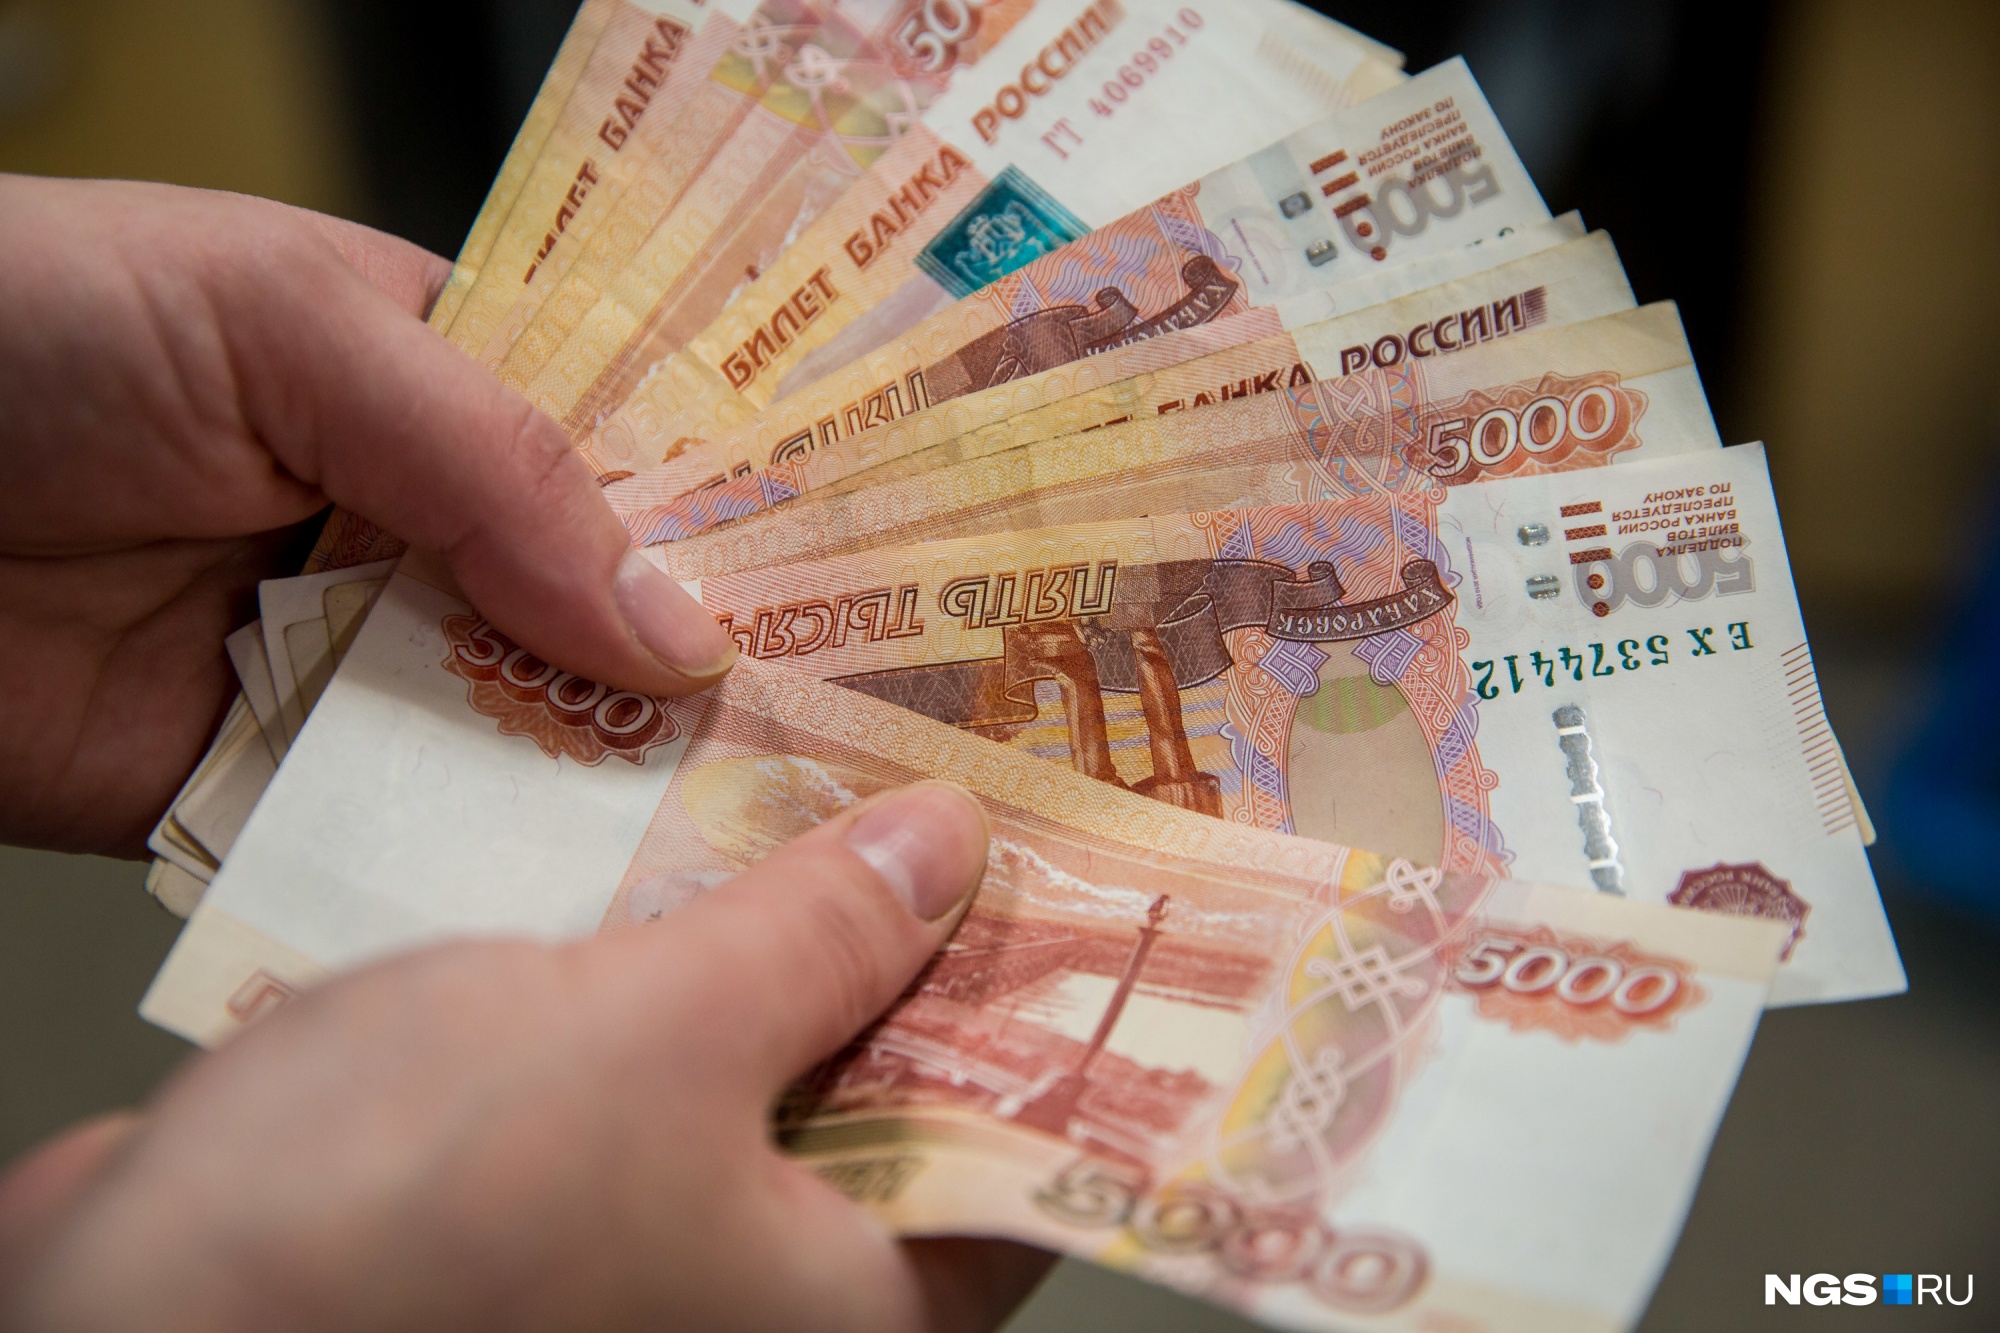 Власти Новокузнецка задолжали коммунальщикам 110 млн рублей. Деньги выплатили после вмешательства прокурора